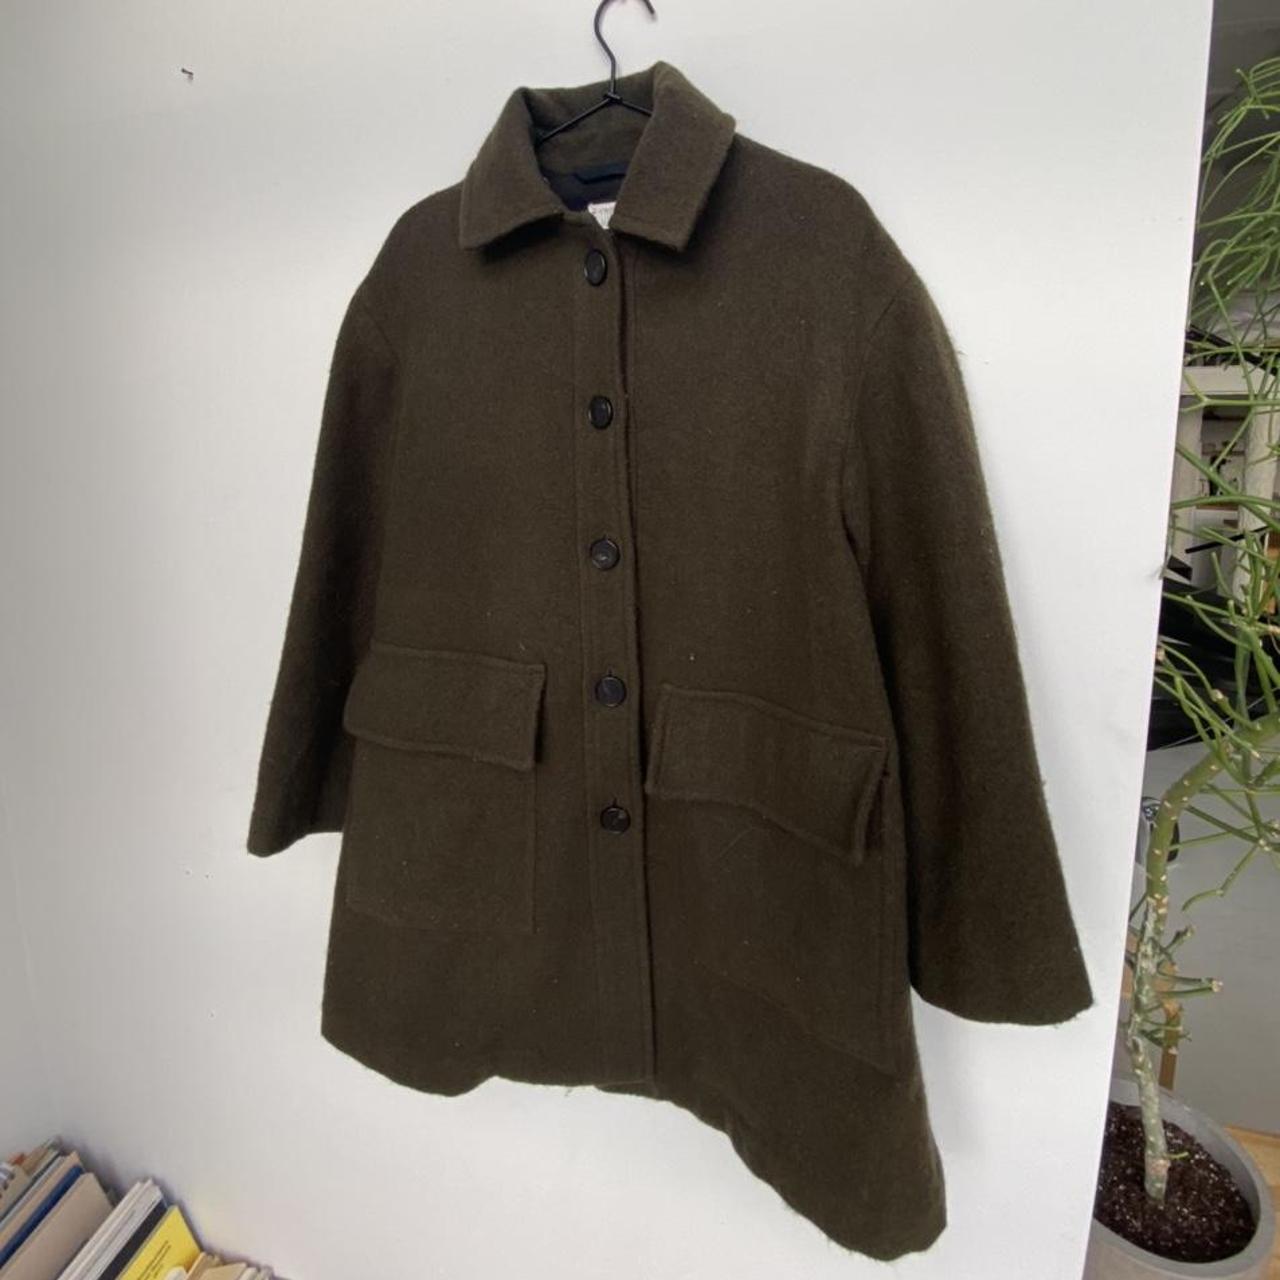 Product Image 1 - Wool TOAST pea coat. Nice